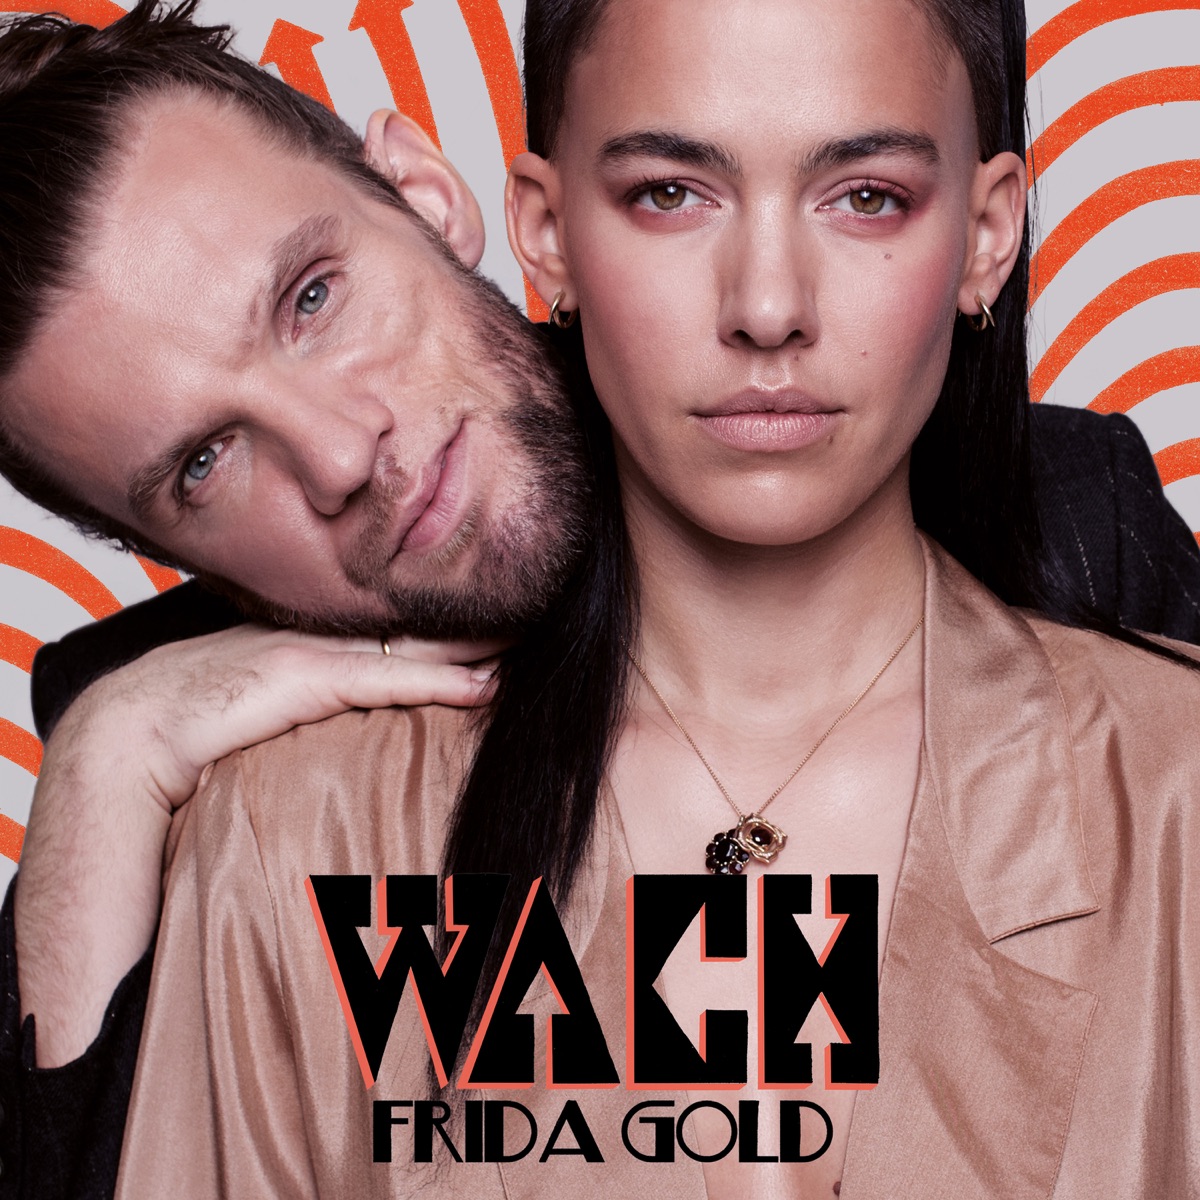 Wovon sollen wir trÃ¤umen (Deluxe Version) - EPâ€œ von FRIDA GOLD bei Apple  Music